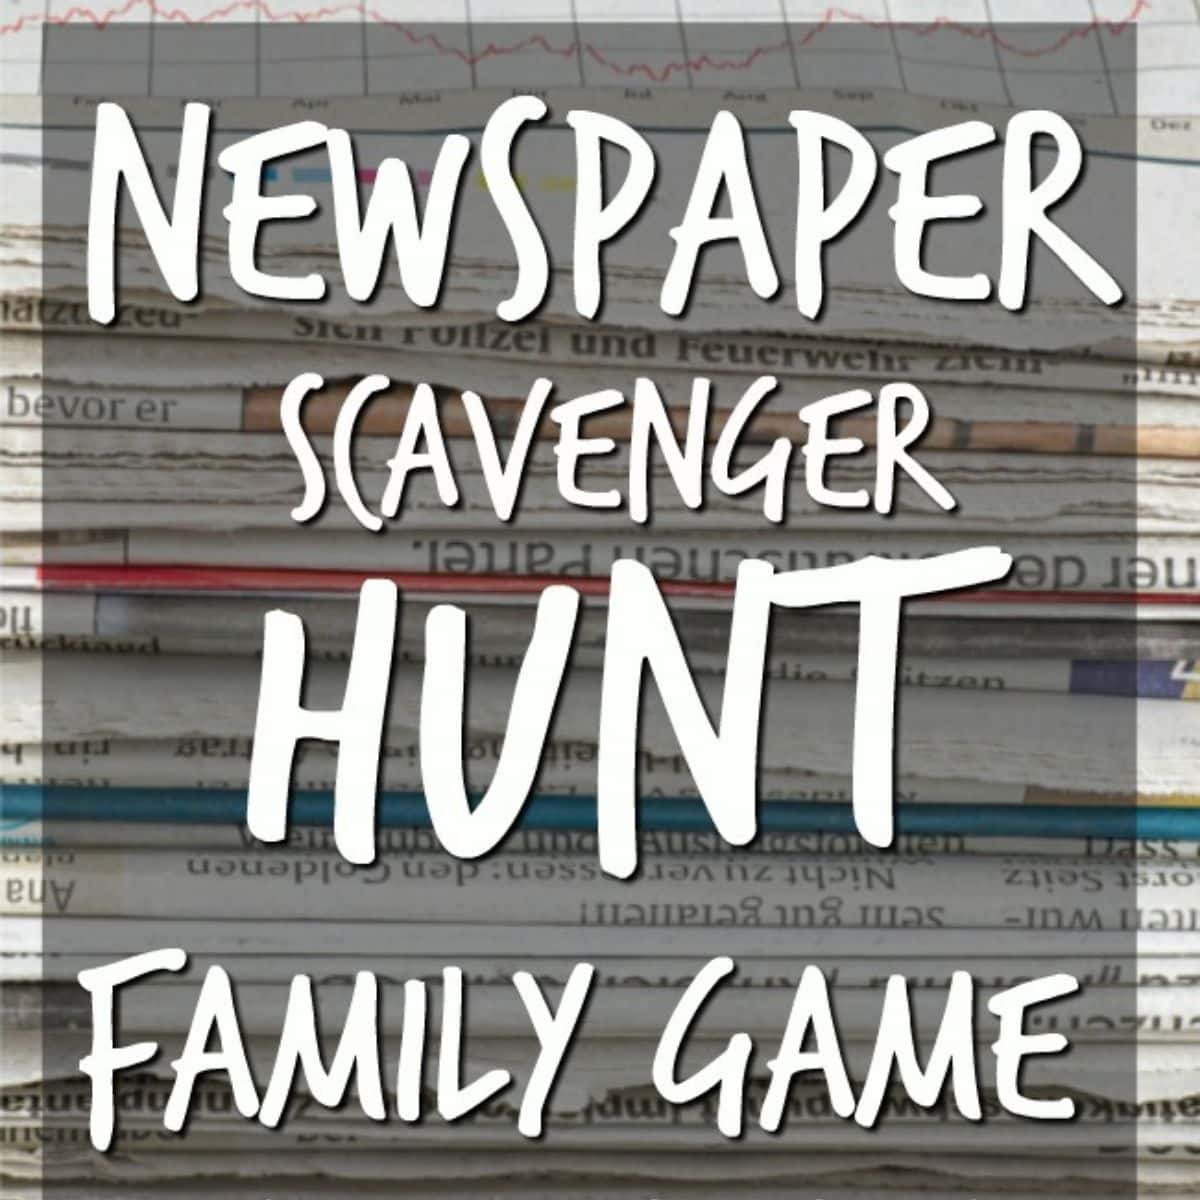 Newspaper scavenger hunt family game poster.